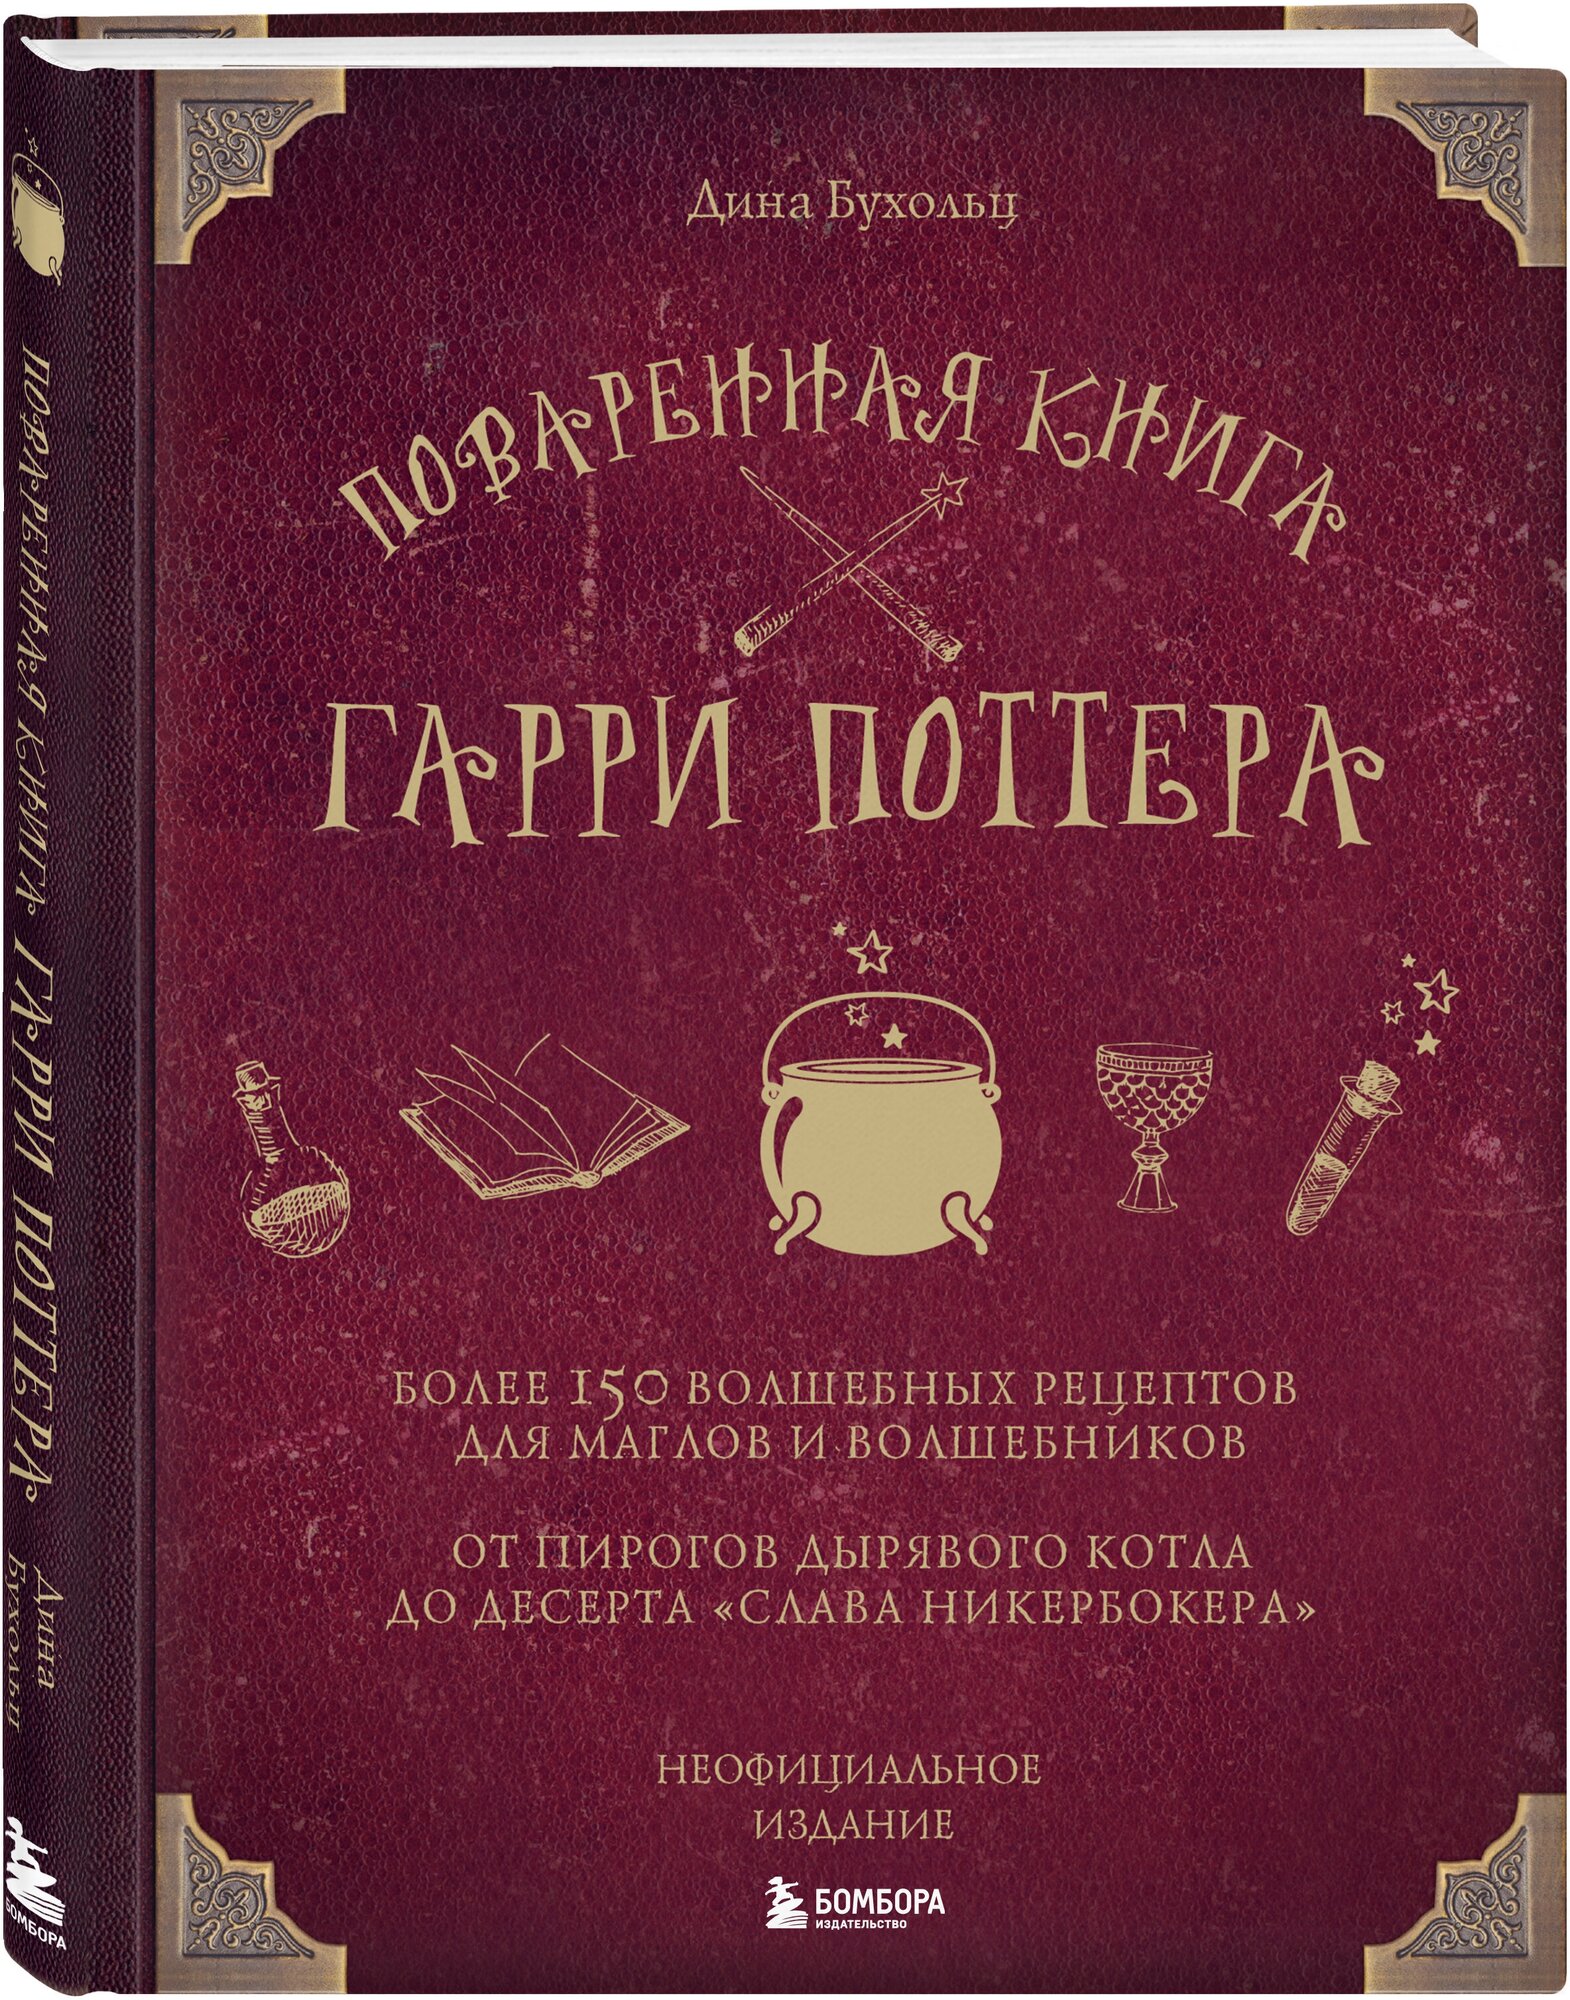 Поваренная книга Гарри Поттера - фото №4